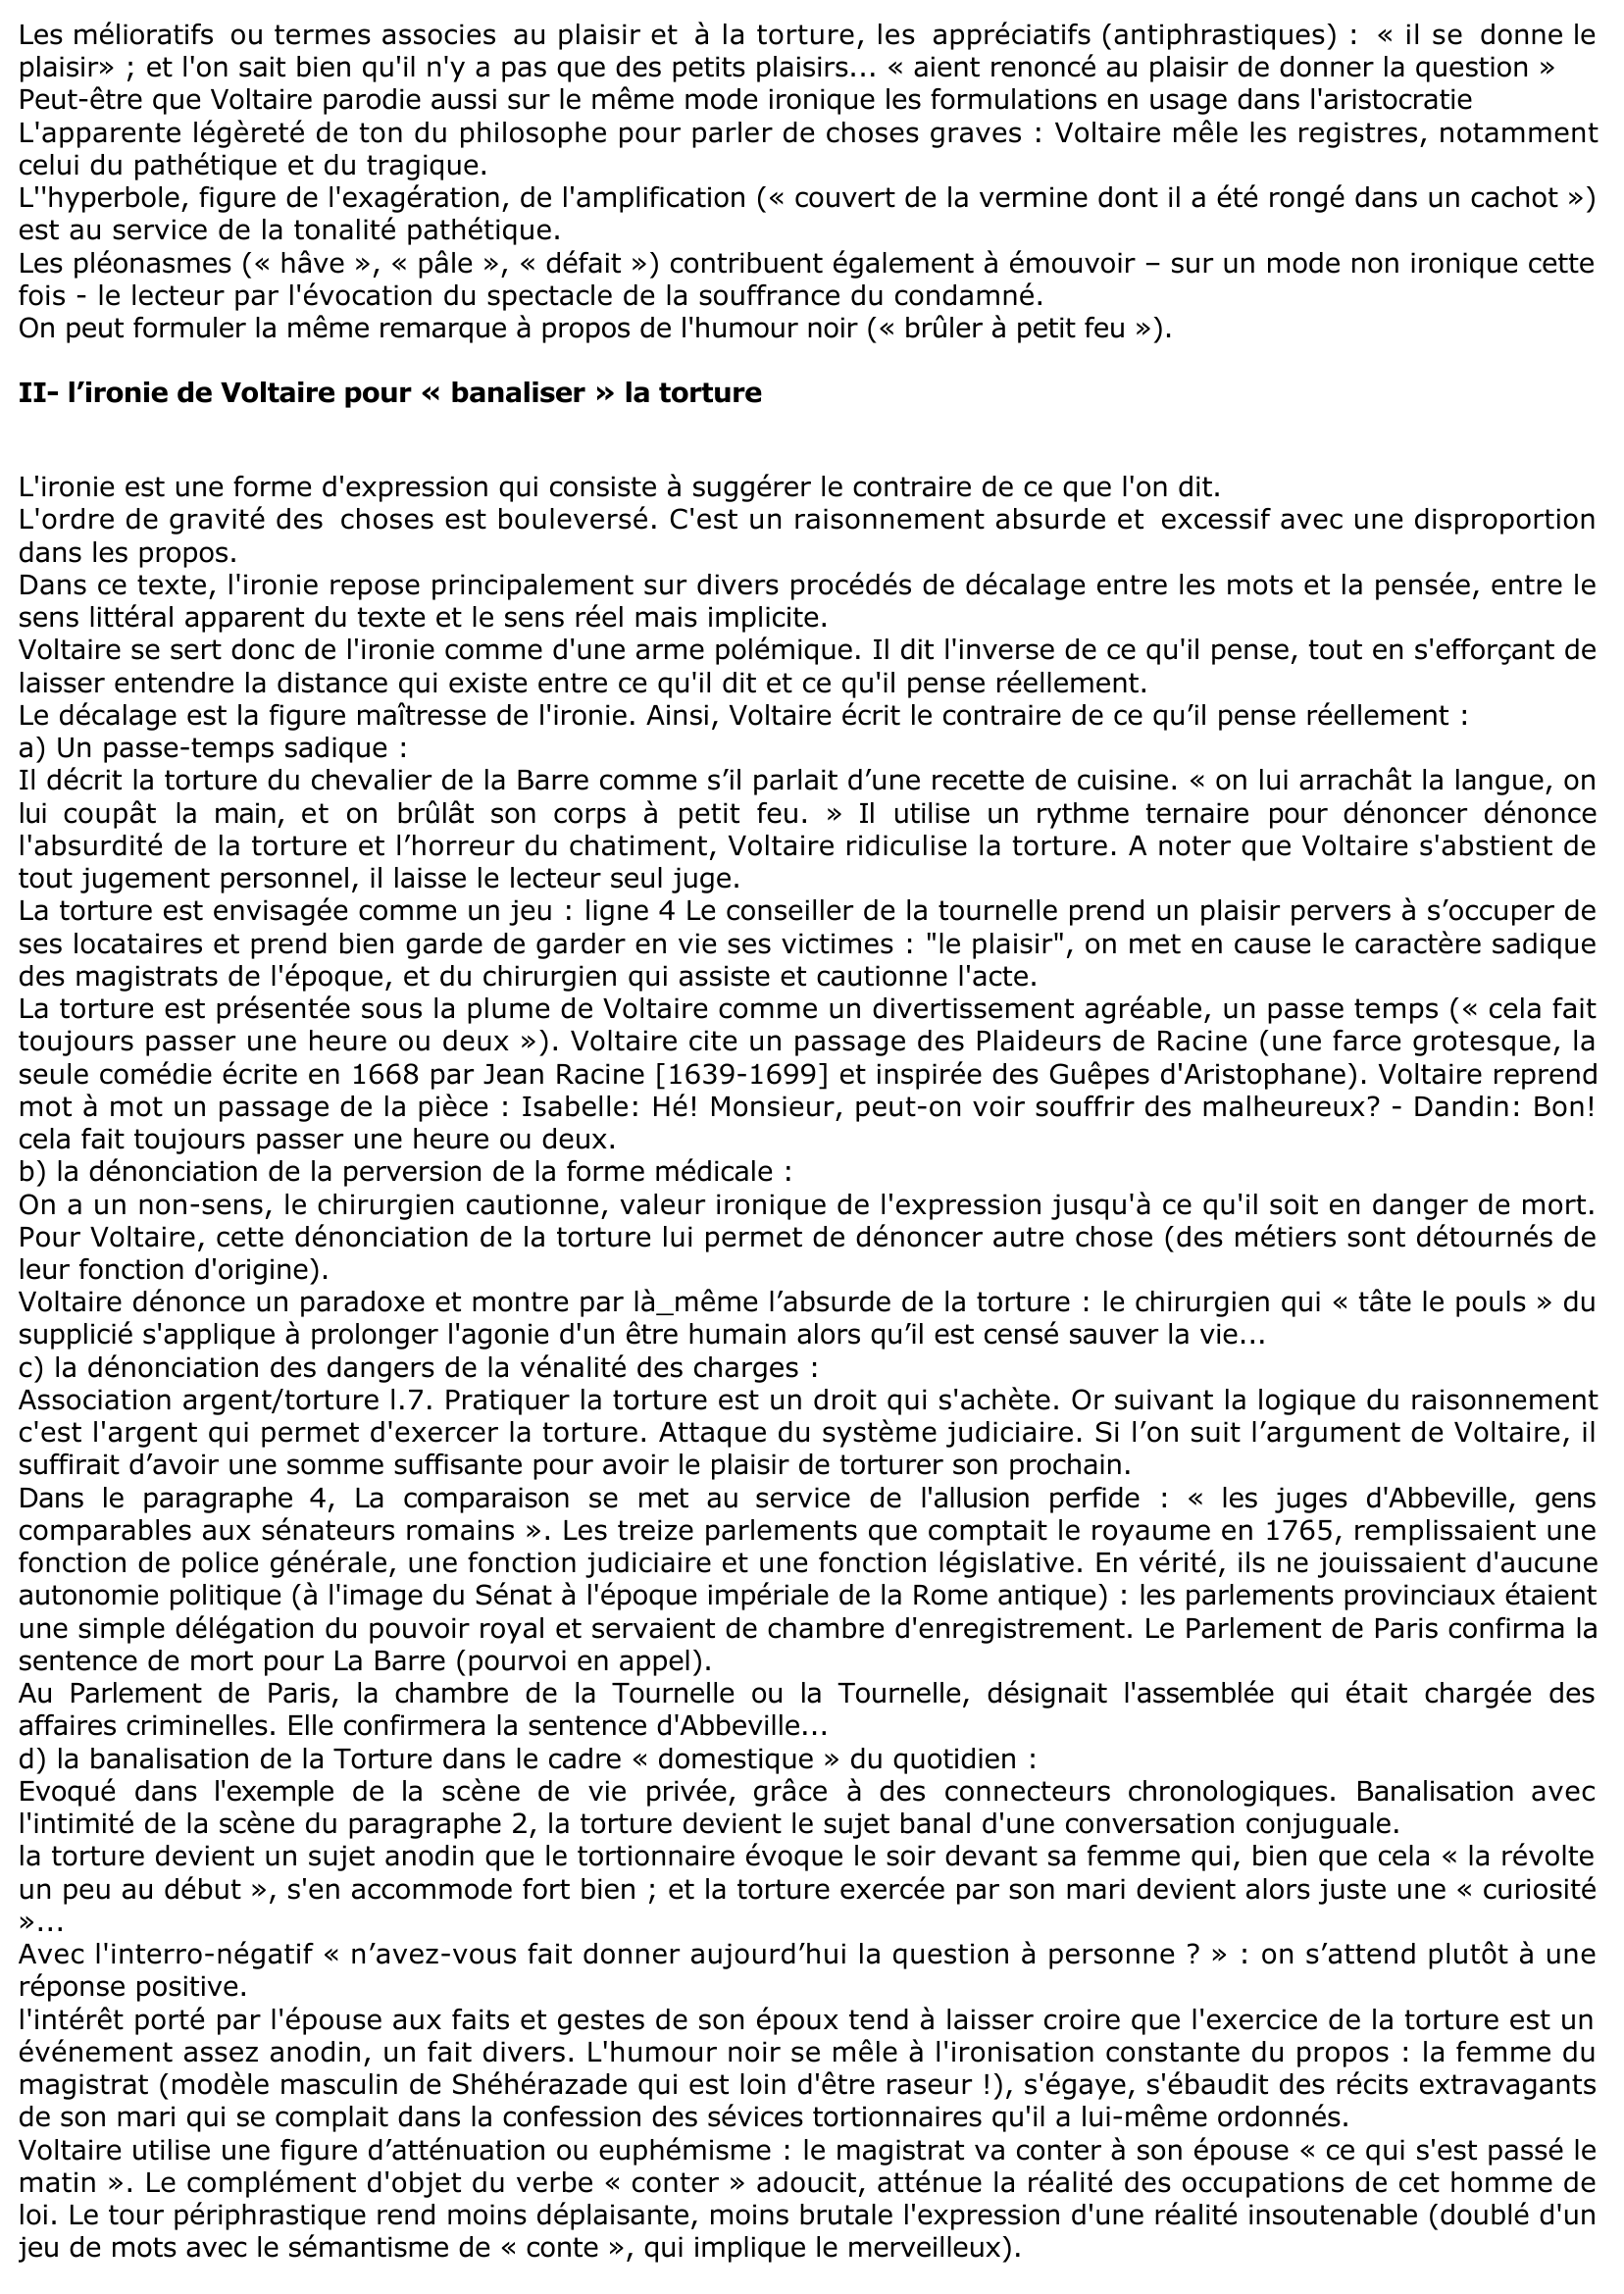 Prévisualisation du document Article "Torture" de Voltaire (Encyclopédie)